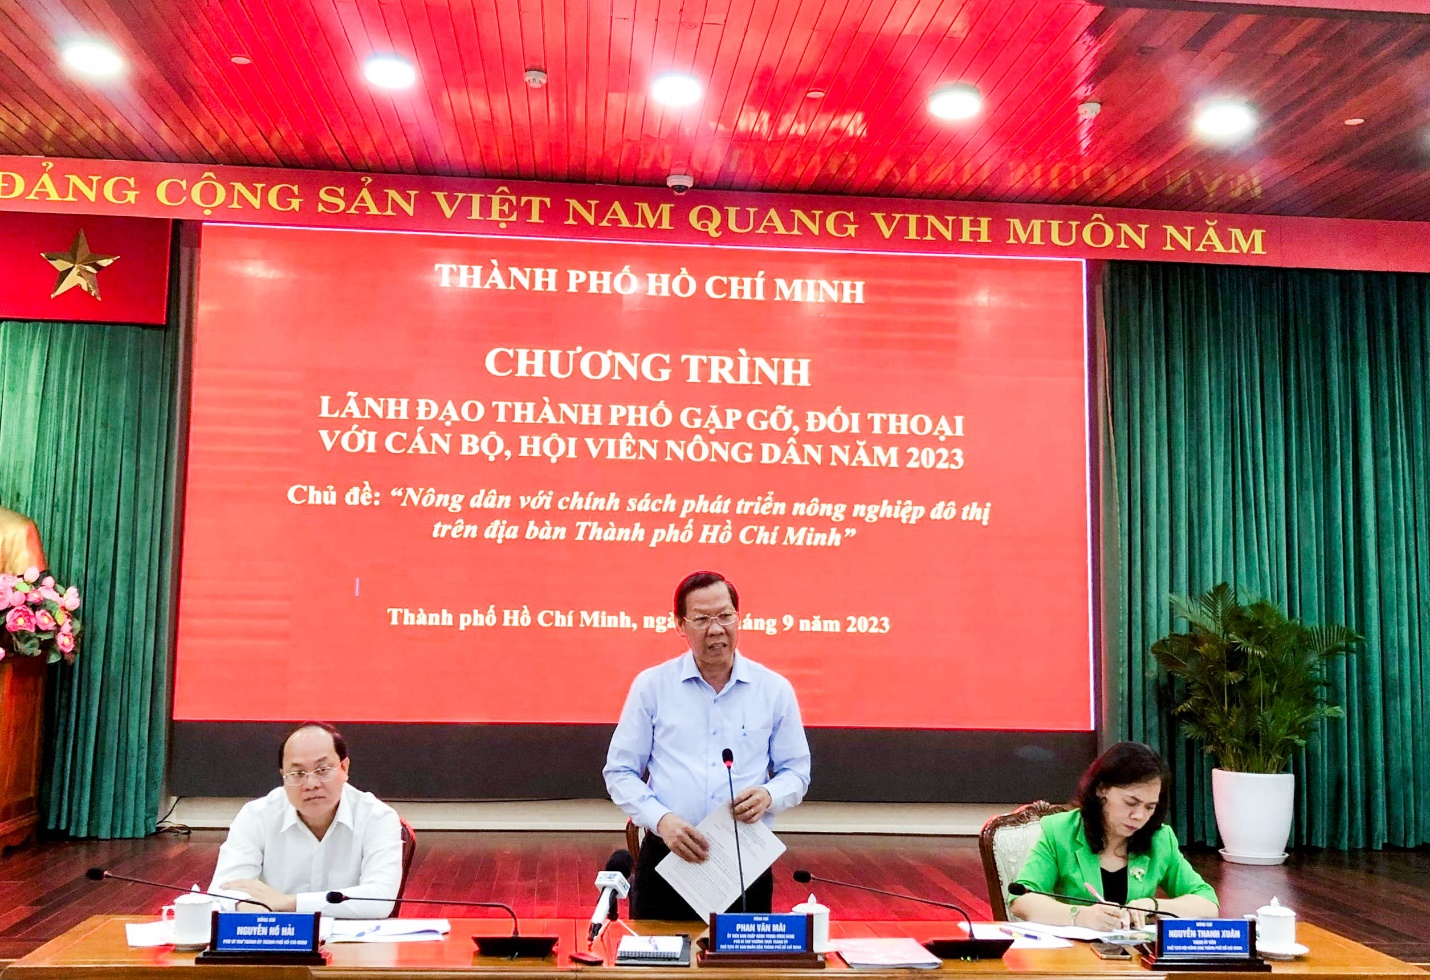 Ông Phan Văn Mãi, Chủ tịch UBND TP.HCM tại buổi gặp gỡ, đối thoại với cán bộ, hội viên nông dân 2023